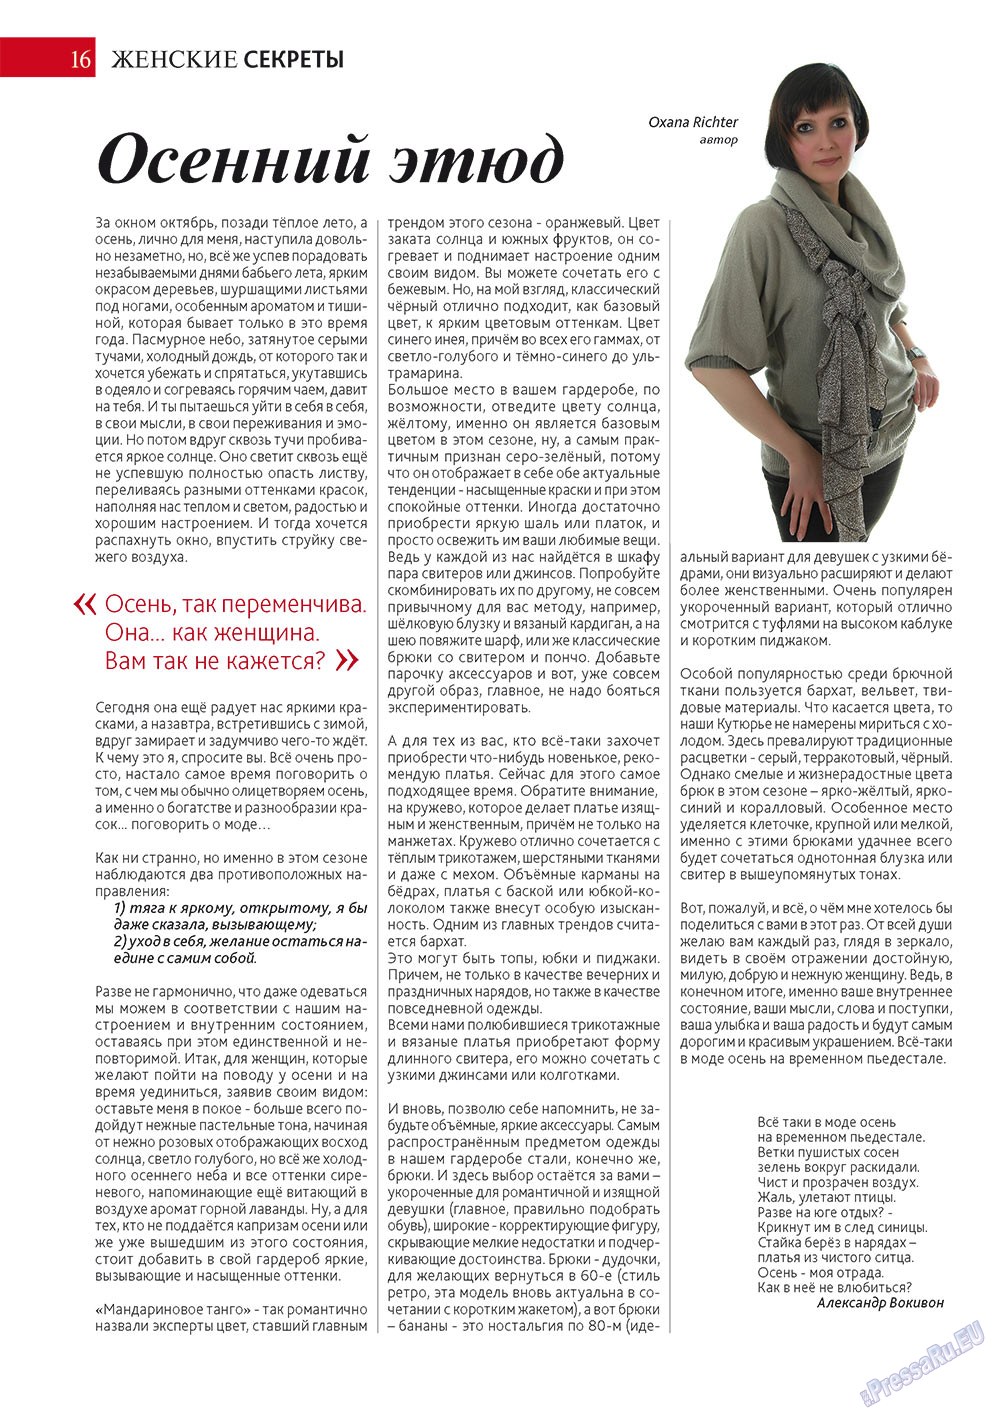 Афиша Augsburg (журнал). 2012 год, номер 11, стр. 16